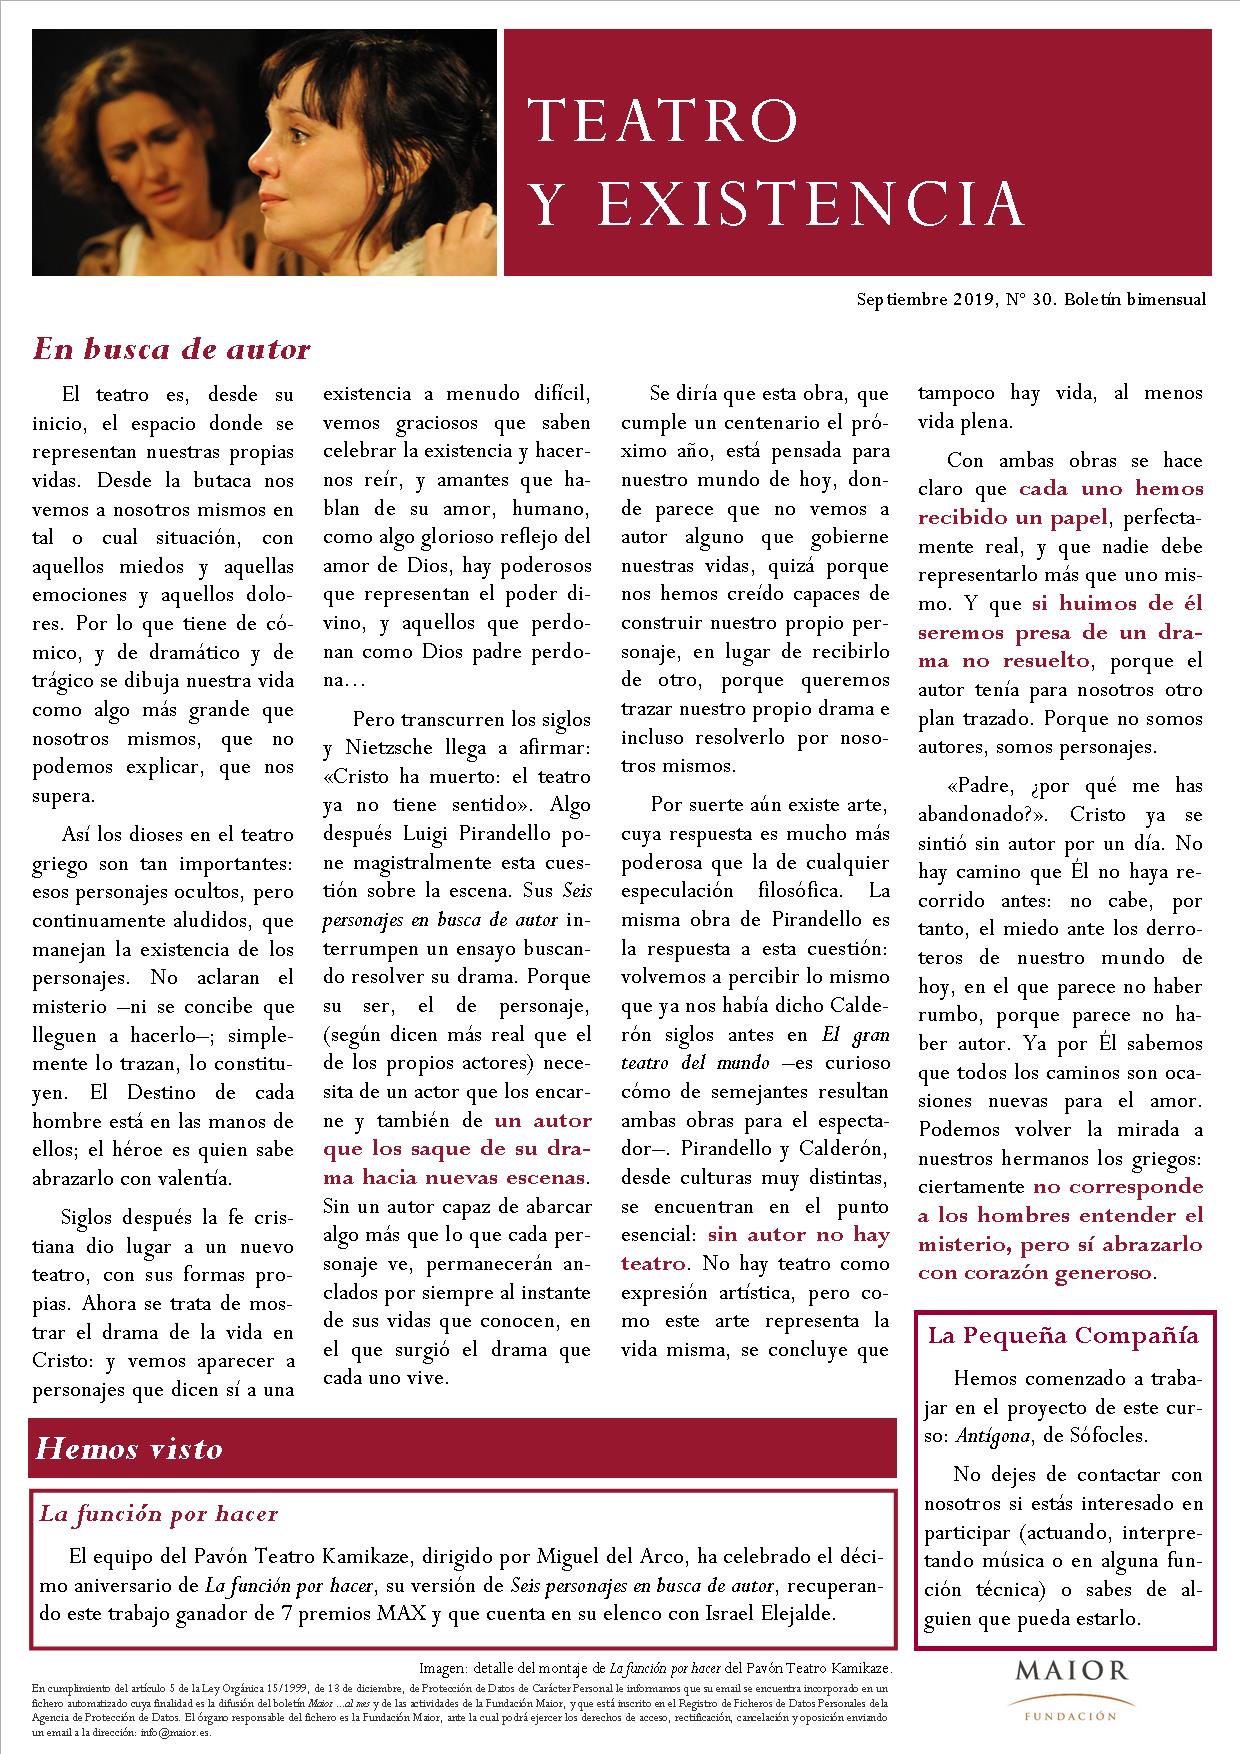 Boletín de Teatro y Existencia de La Pequeña Compañía de la Fundación Maior, con recomendaciones de la cartelera. Edición de Septiembre 2019